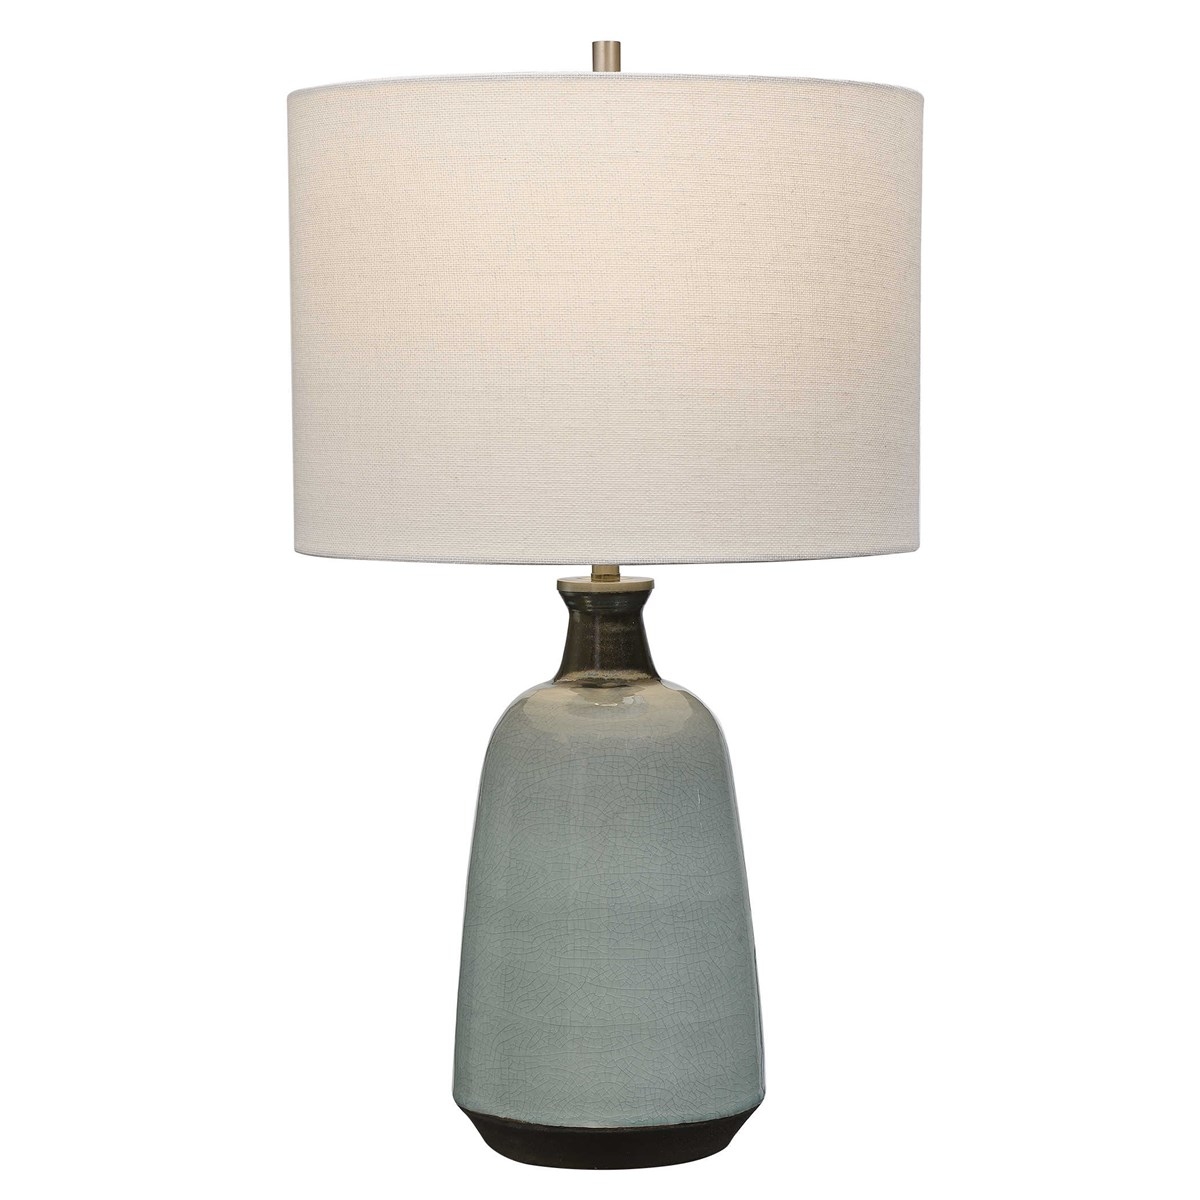 Ceramic Glazed Table Lamp, Turquoise, 24" - Image 0